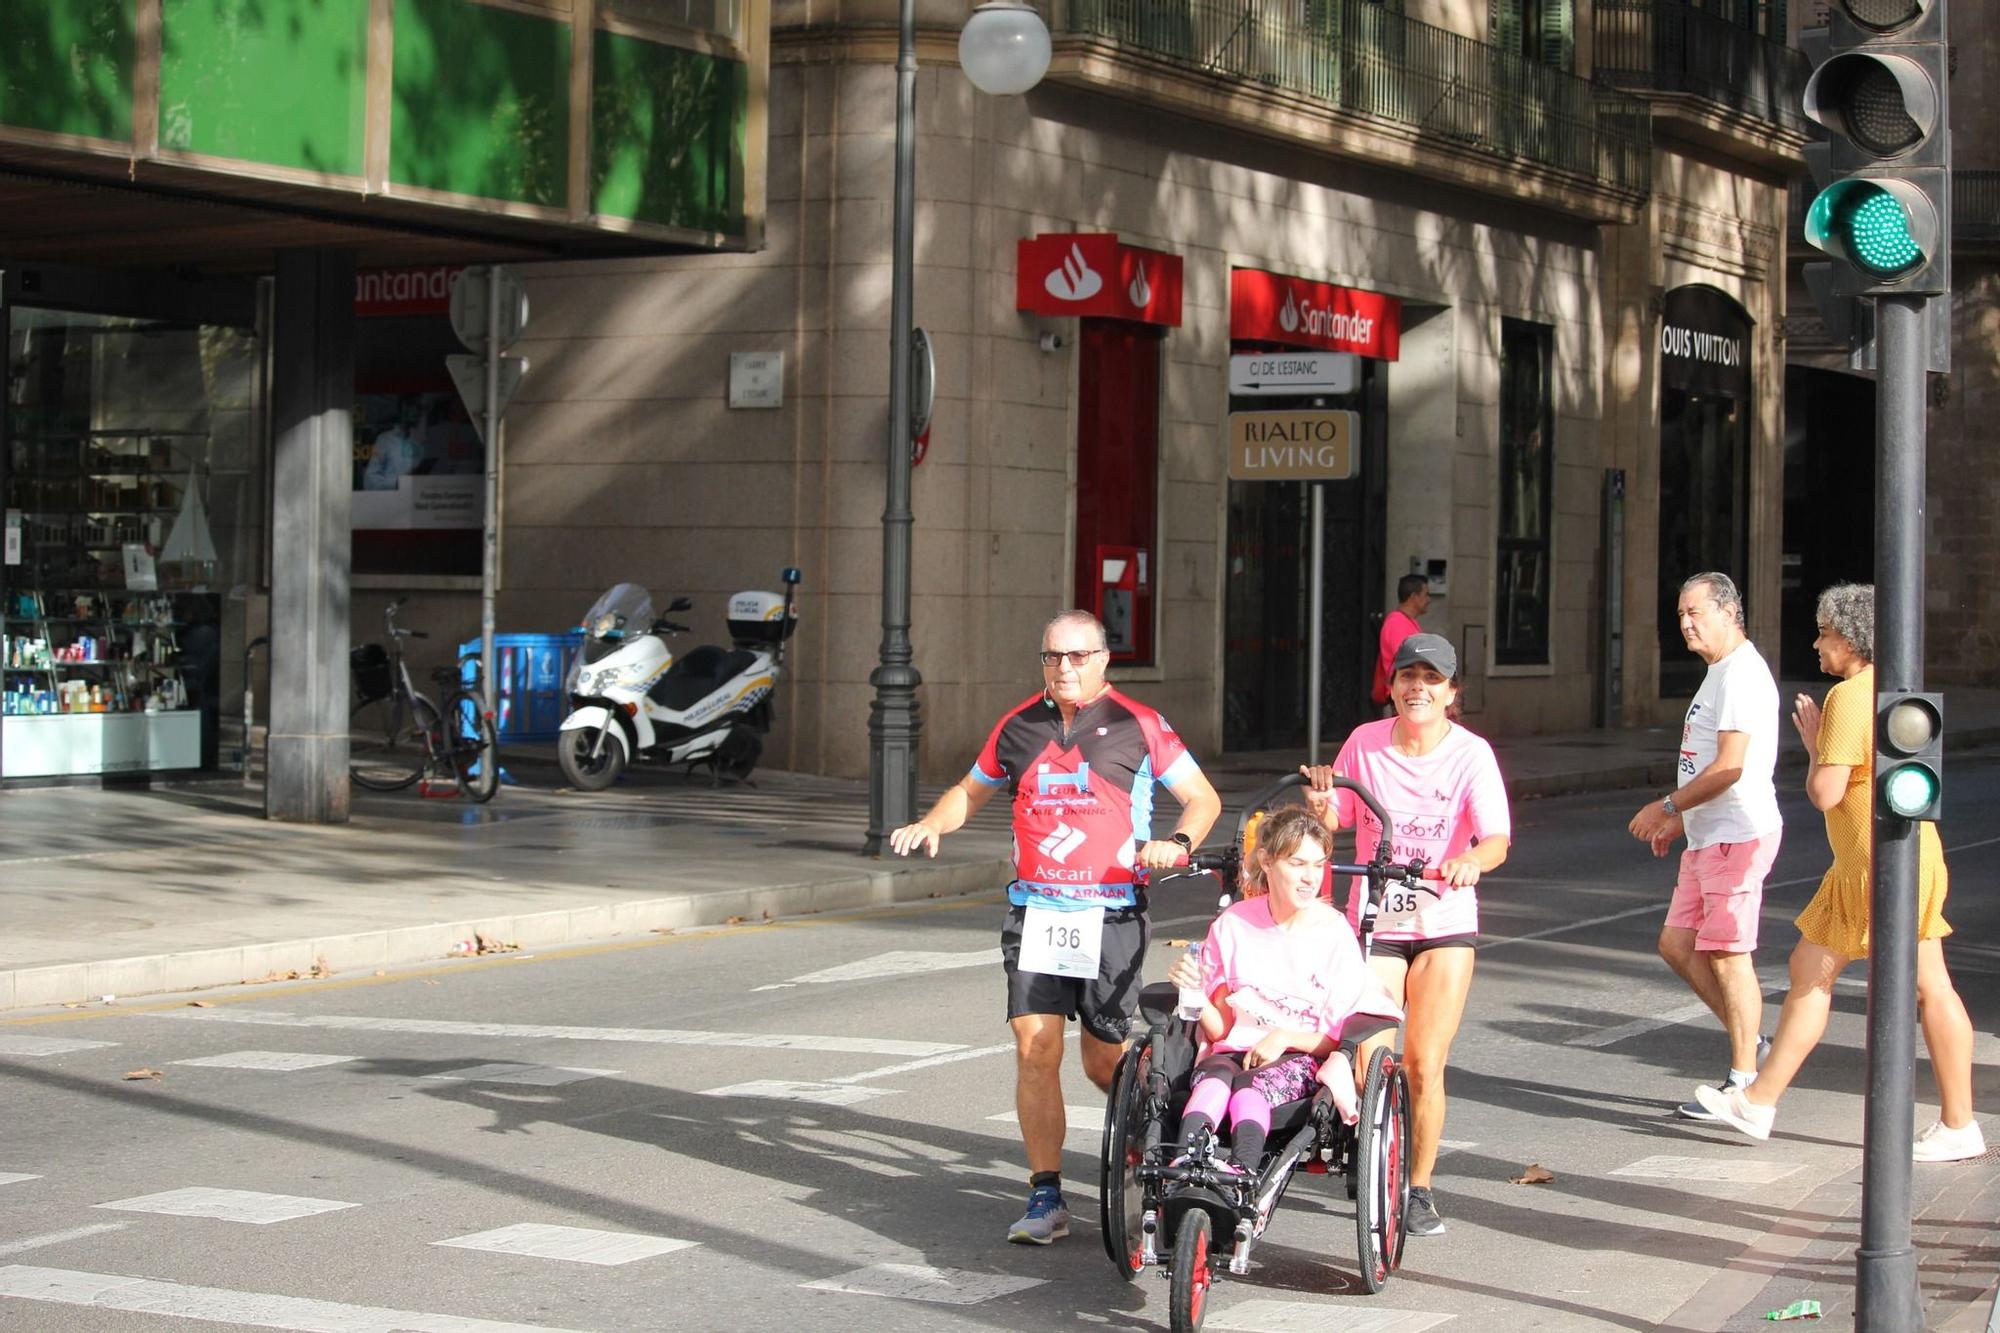 VII Carrera Mallorca en Marcha contra el Cancer 2022